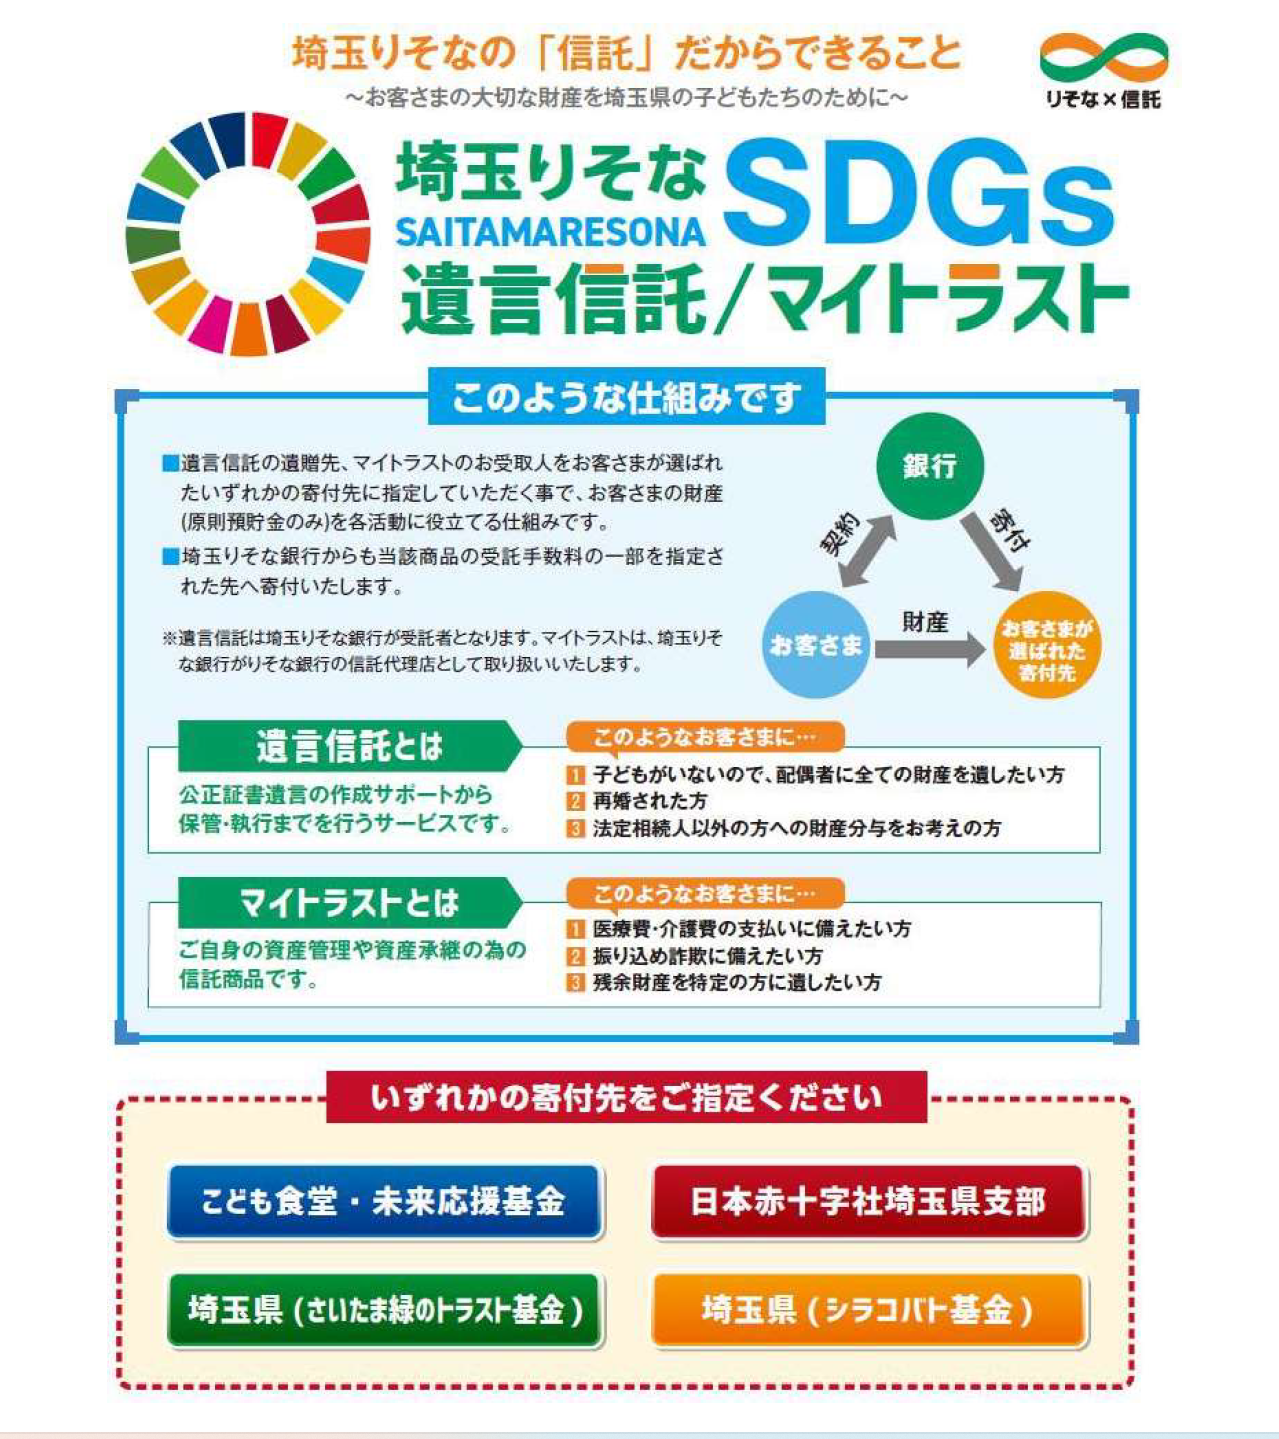  朝活100本ノック / SDGs・ESG投資 授業87日目【埼玉りそな銀行】